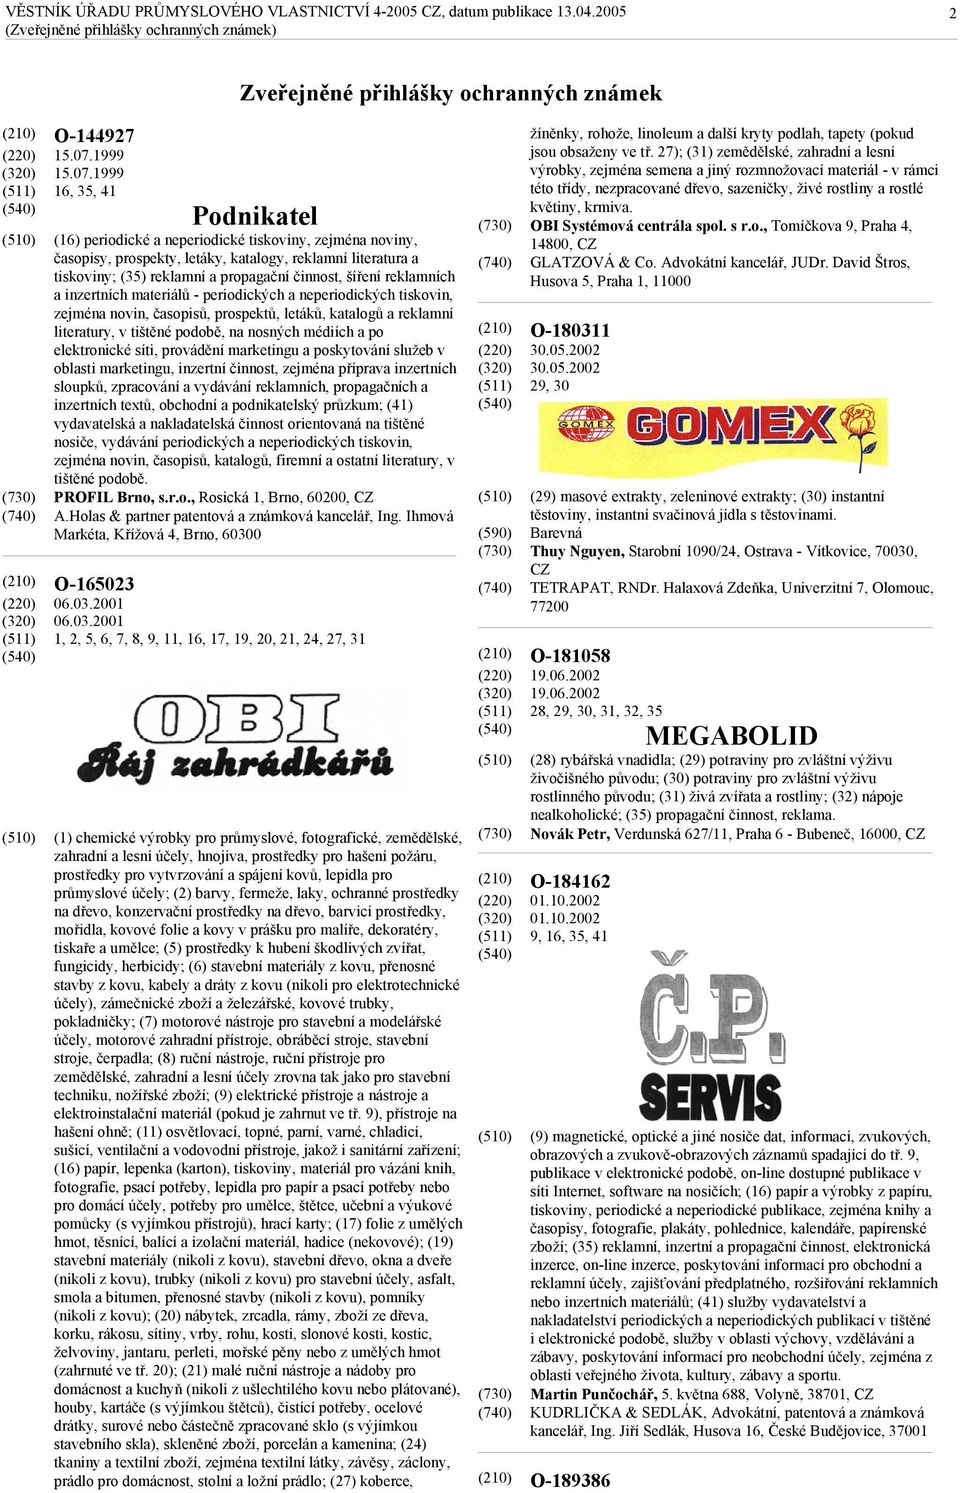 1999 16, 35, 41 O-165023 Podnikatel (16) periodické a neperiodické tiskoviny, zejména noviny, časopisy, prospekty, letáky, katalogy, reklamní literatura a tiskoviny; (35) reklamní a propagační